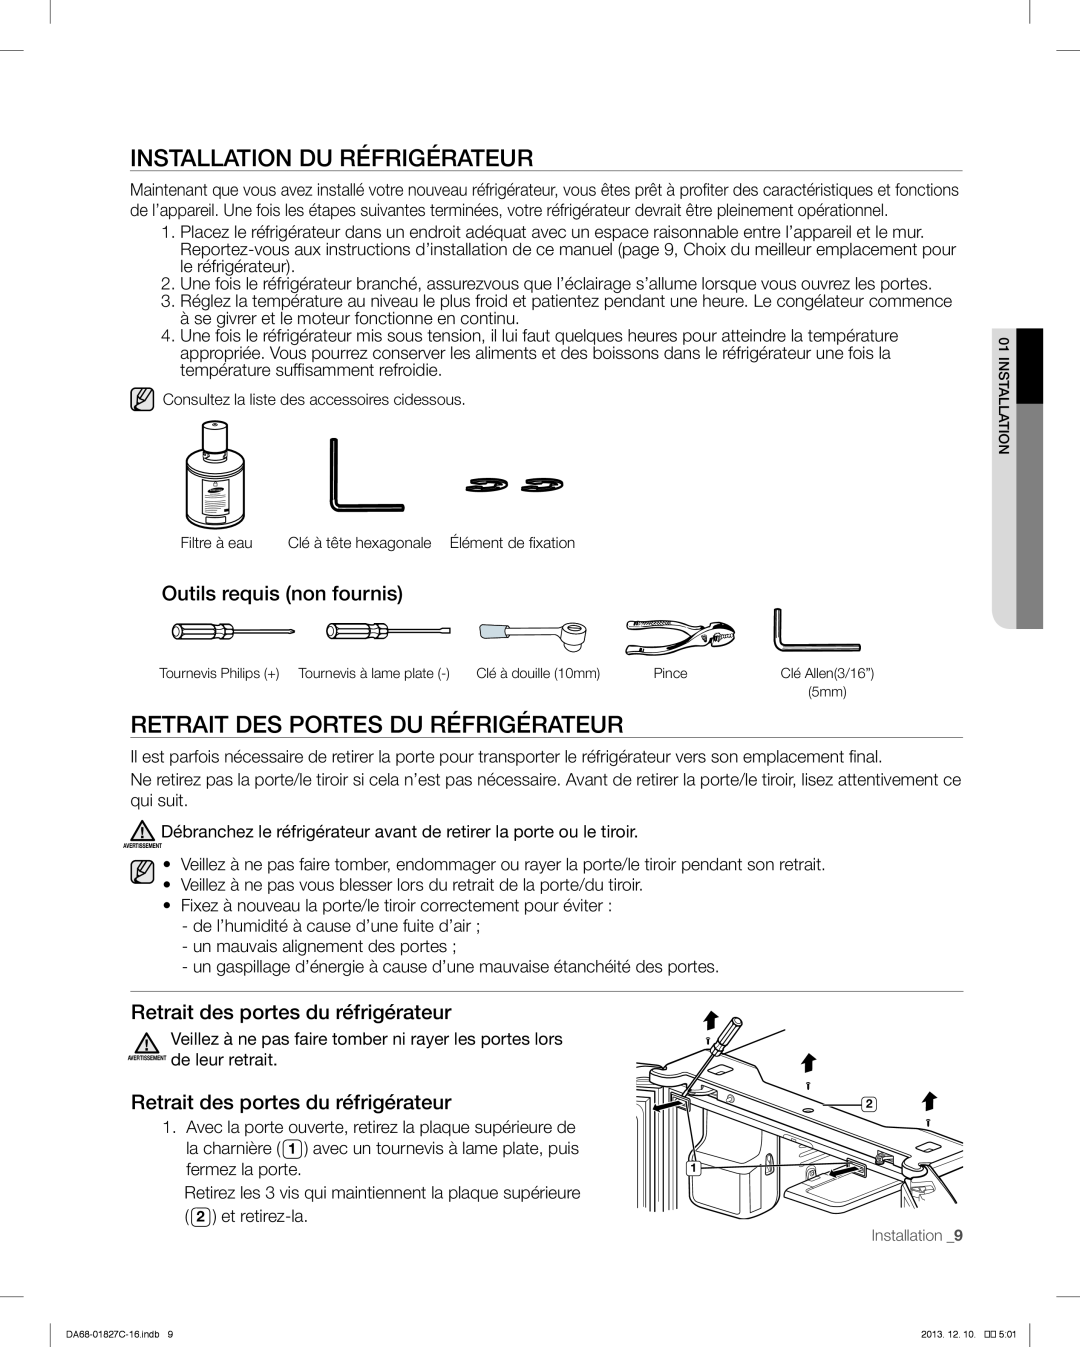 Samsung RFG237AARS user manual Installation Du Réfrigérateur, Retrait des portes du réfrigérateur 